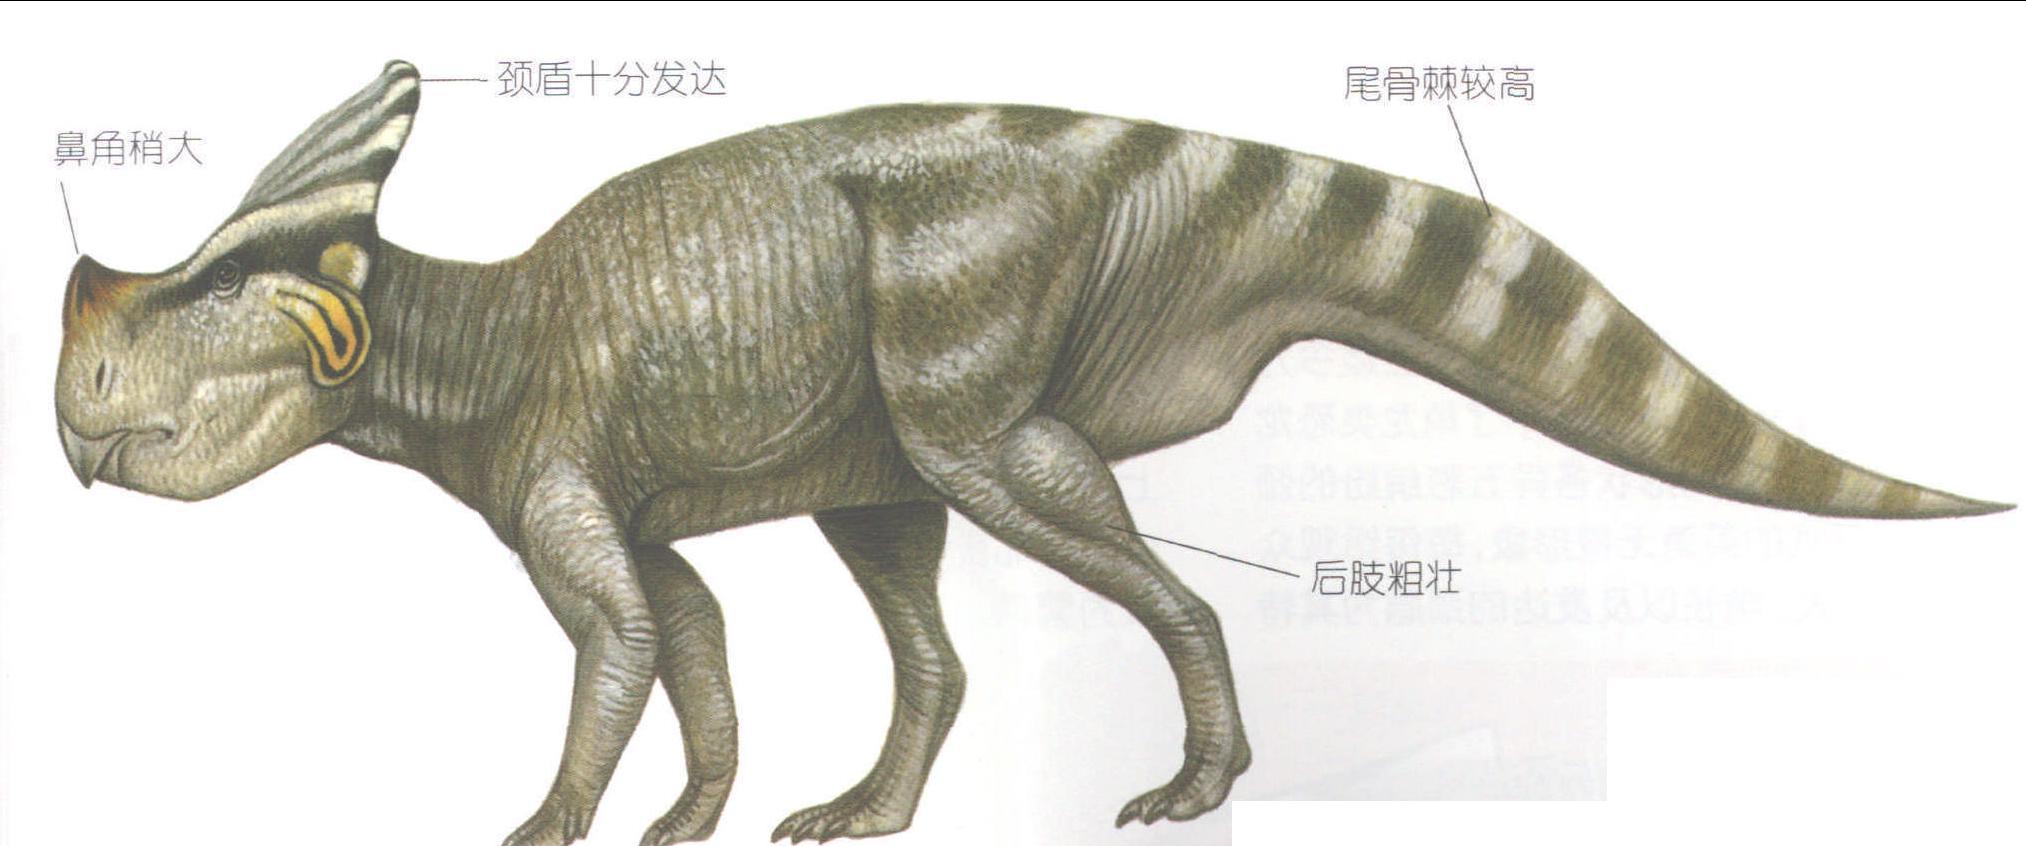 弯剑角龙_恐龙种类_恐龙品种分类l型名称大全恐龙品类图片大全名字